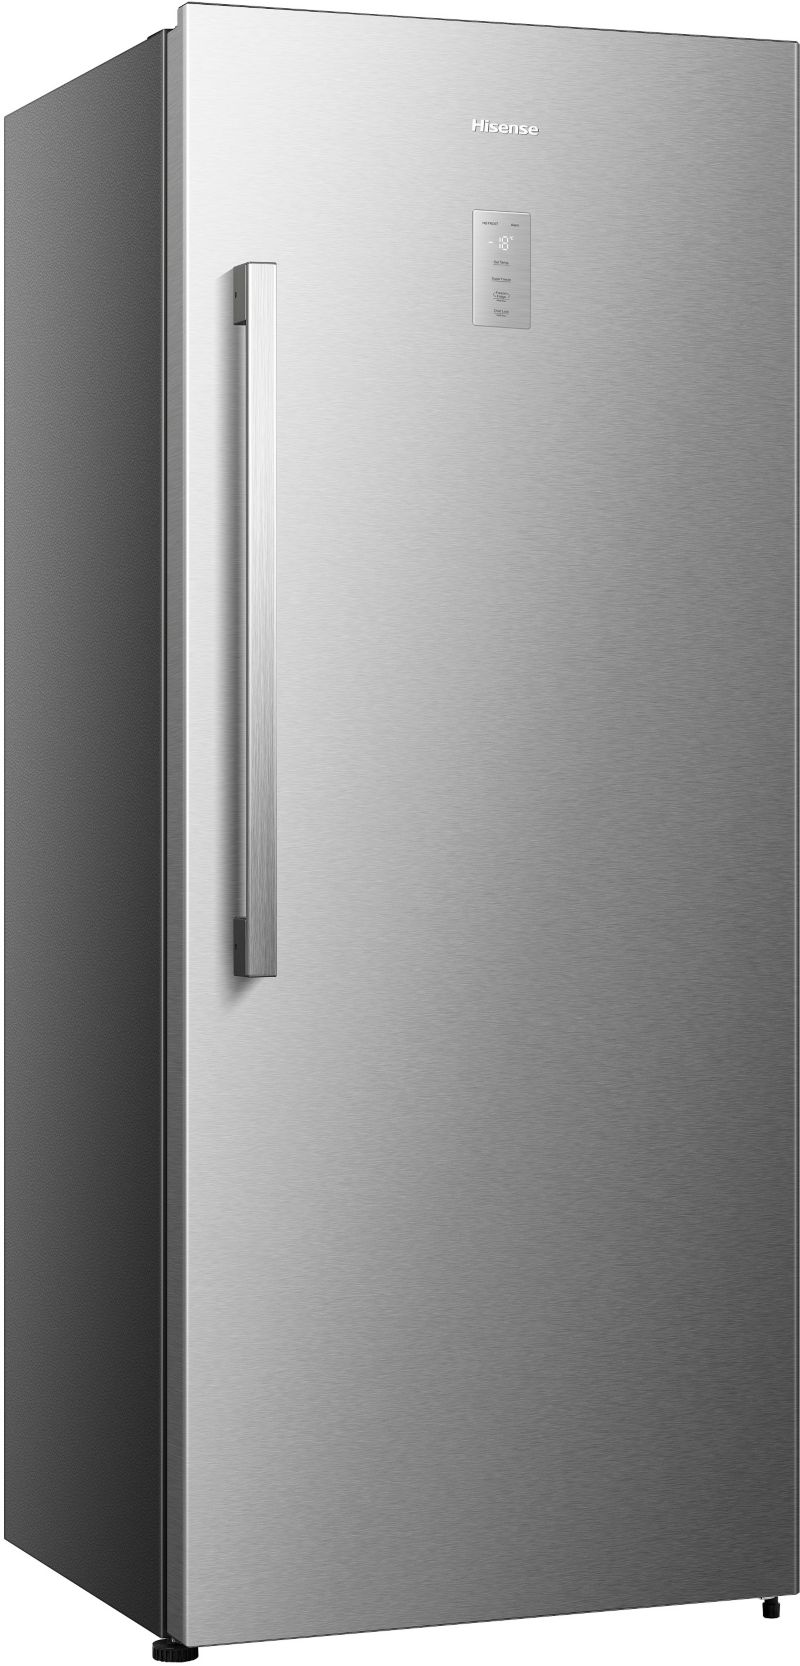 Congélateur armoire HISENSE FT500N4AIE réversible en réfrigérateur Hisense  en gris - Galeries Lafayette